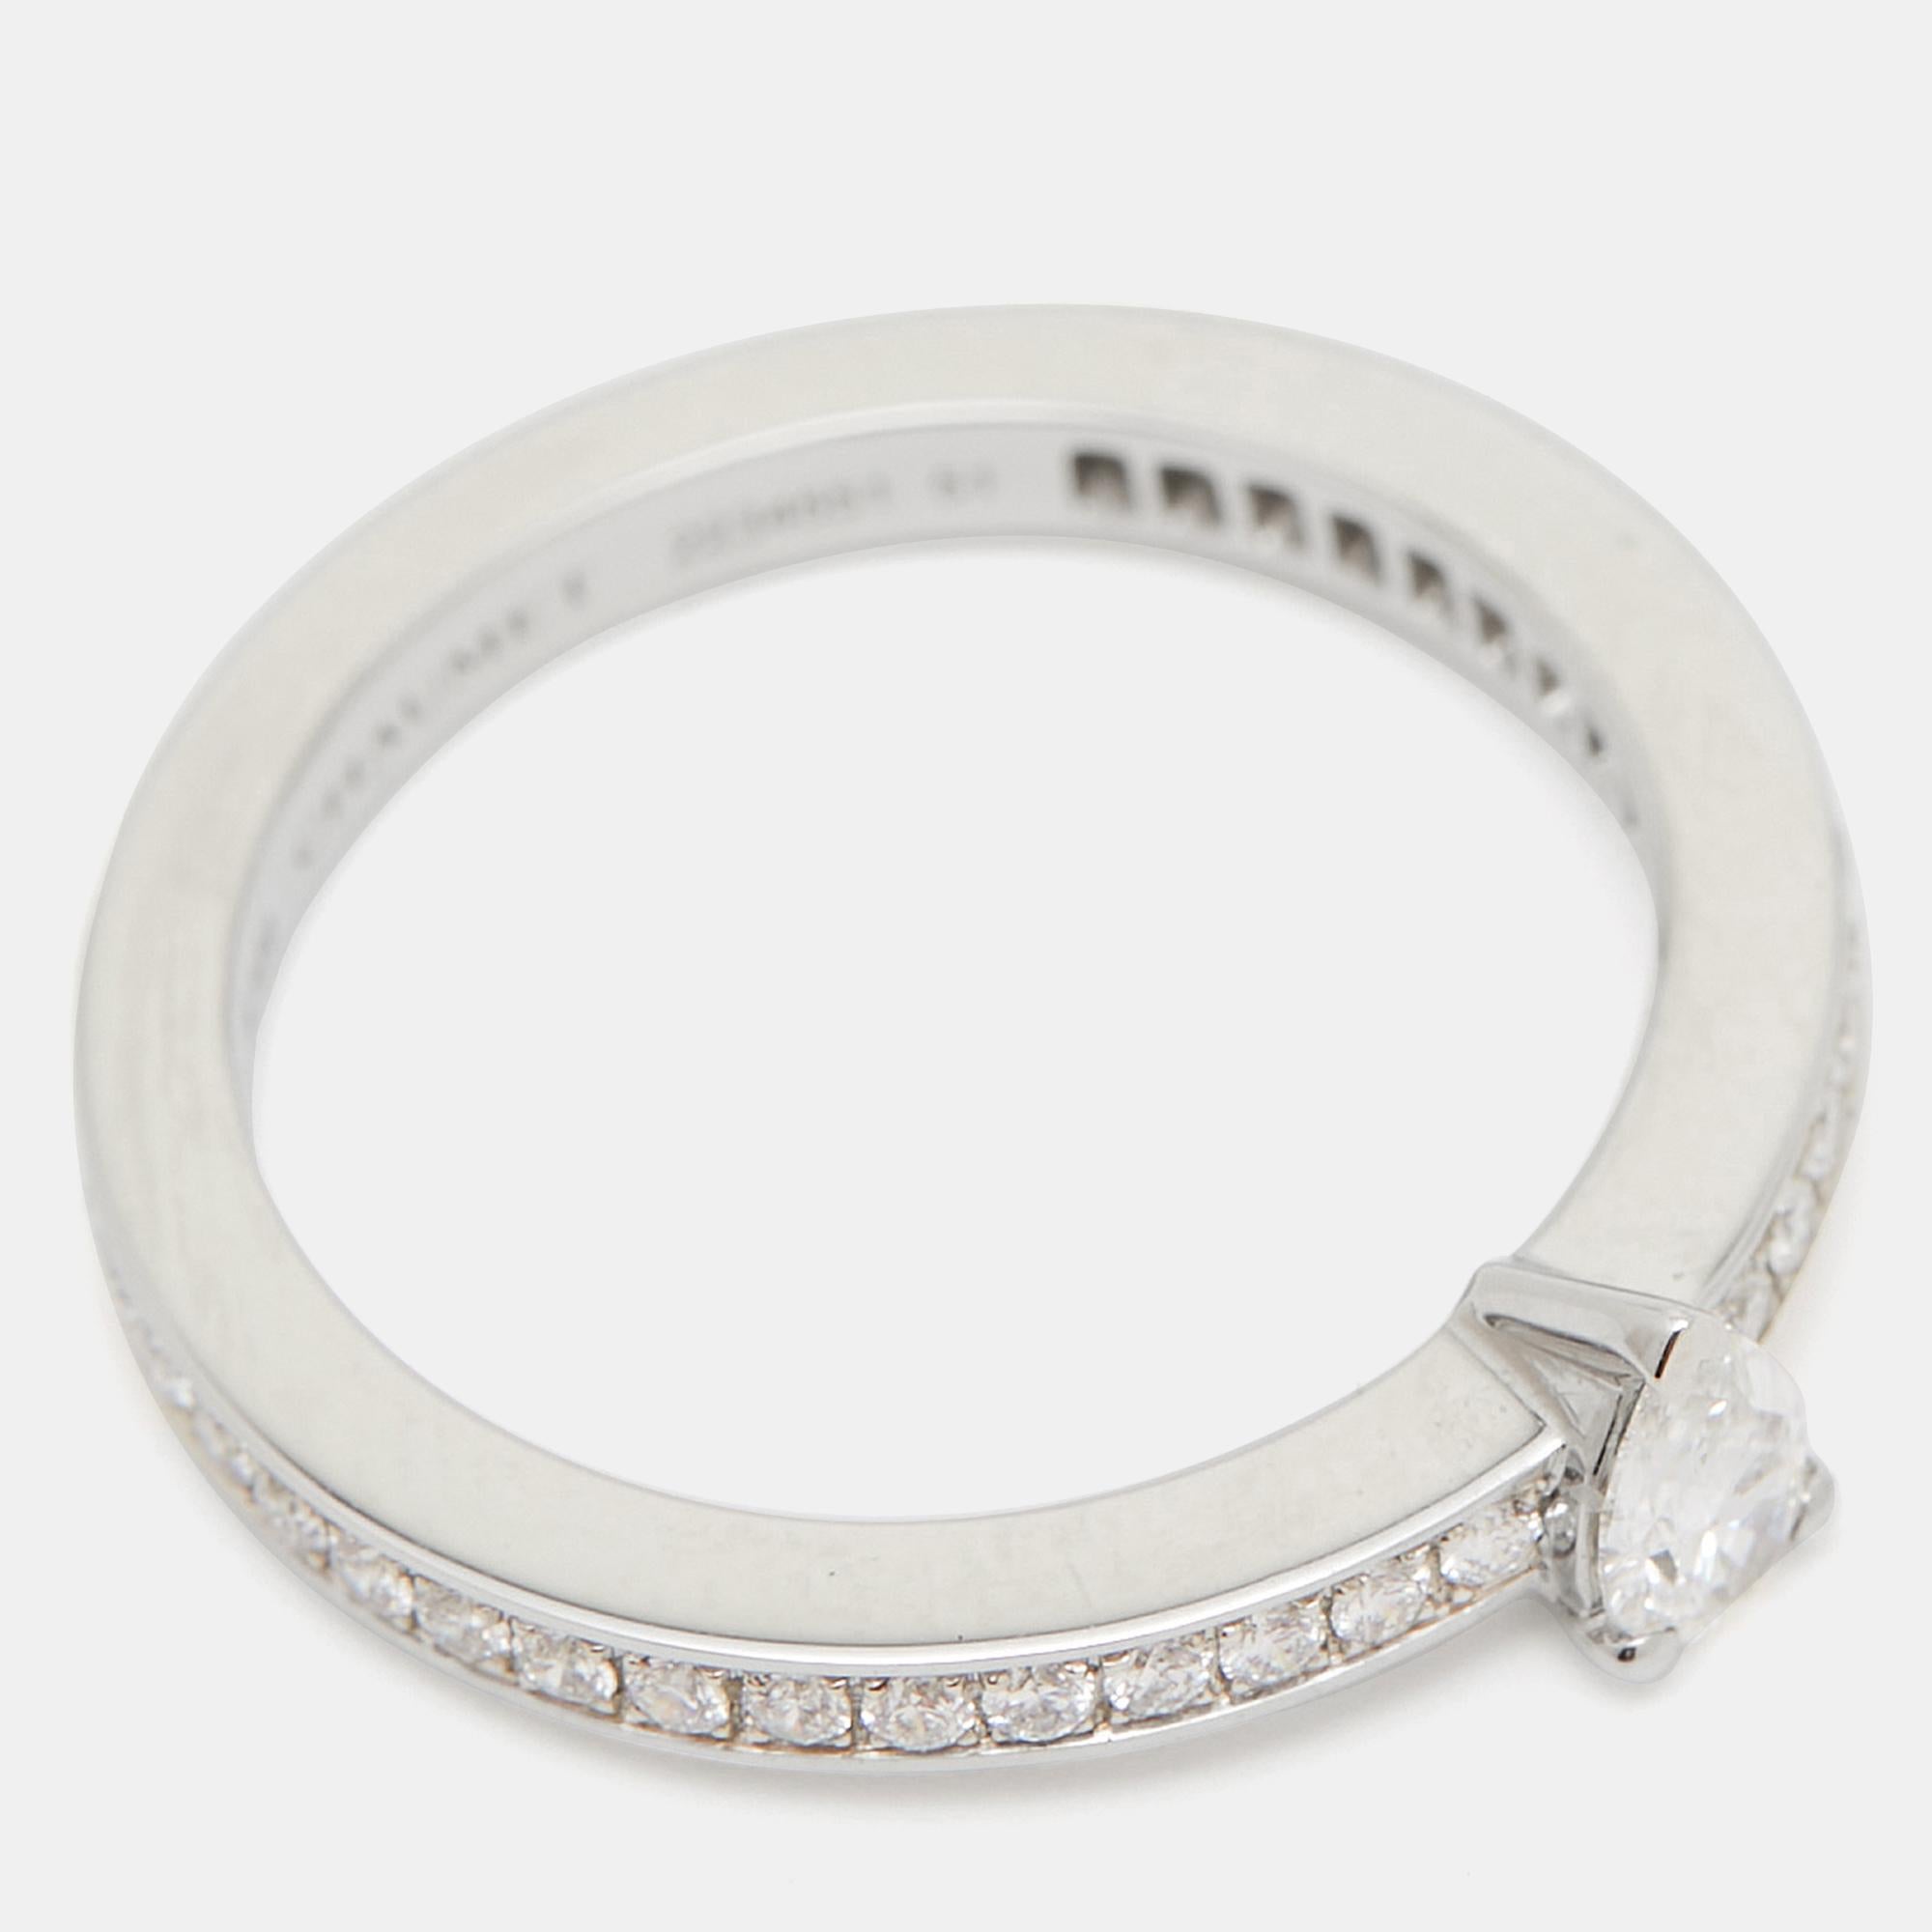 Chaumet Triomphe de Chaumet Diamond Platinum Ring Size 51 In Excellent Condition For Sale In Dubai, Al Qouz 2